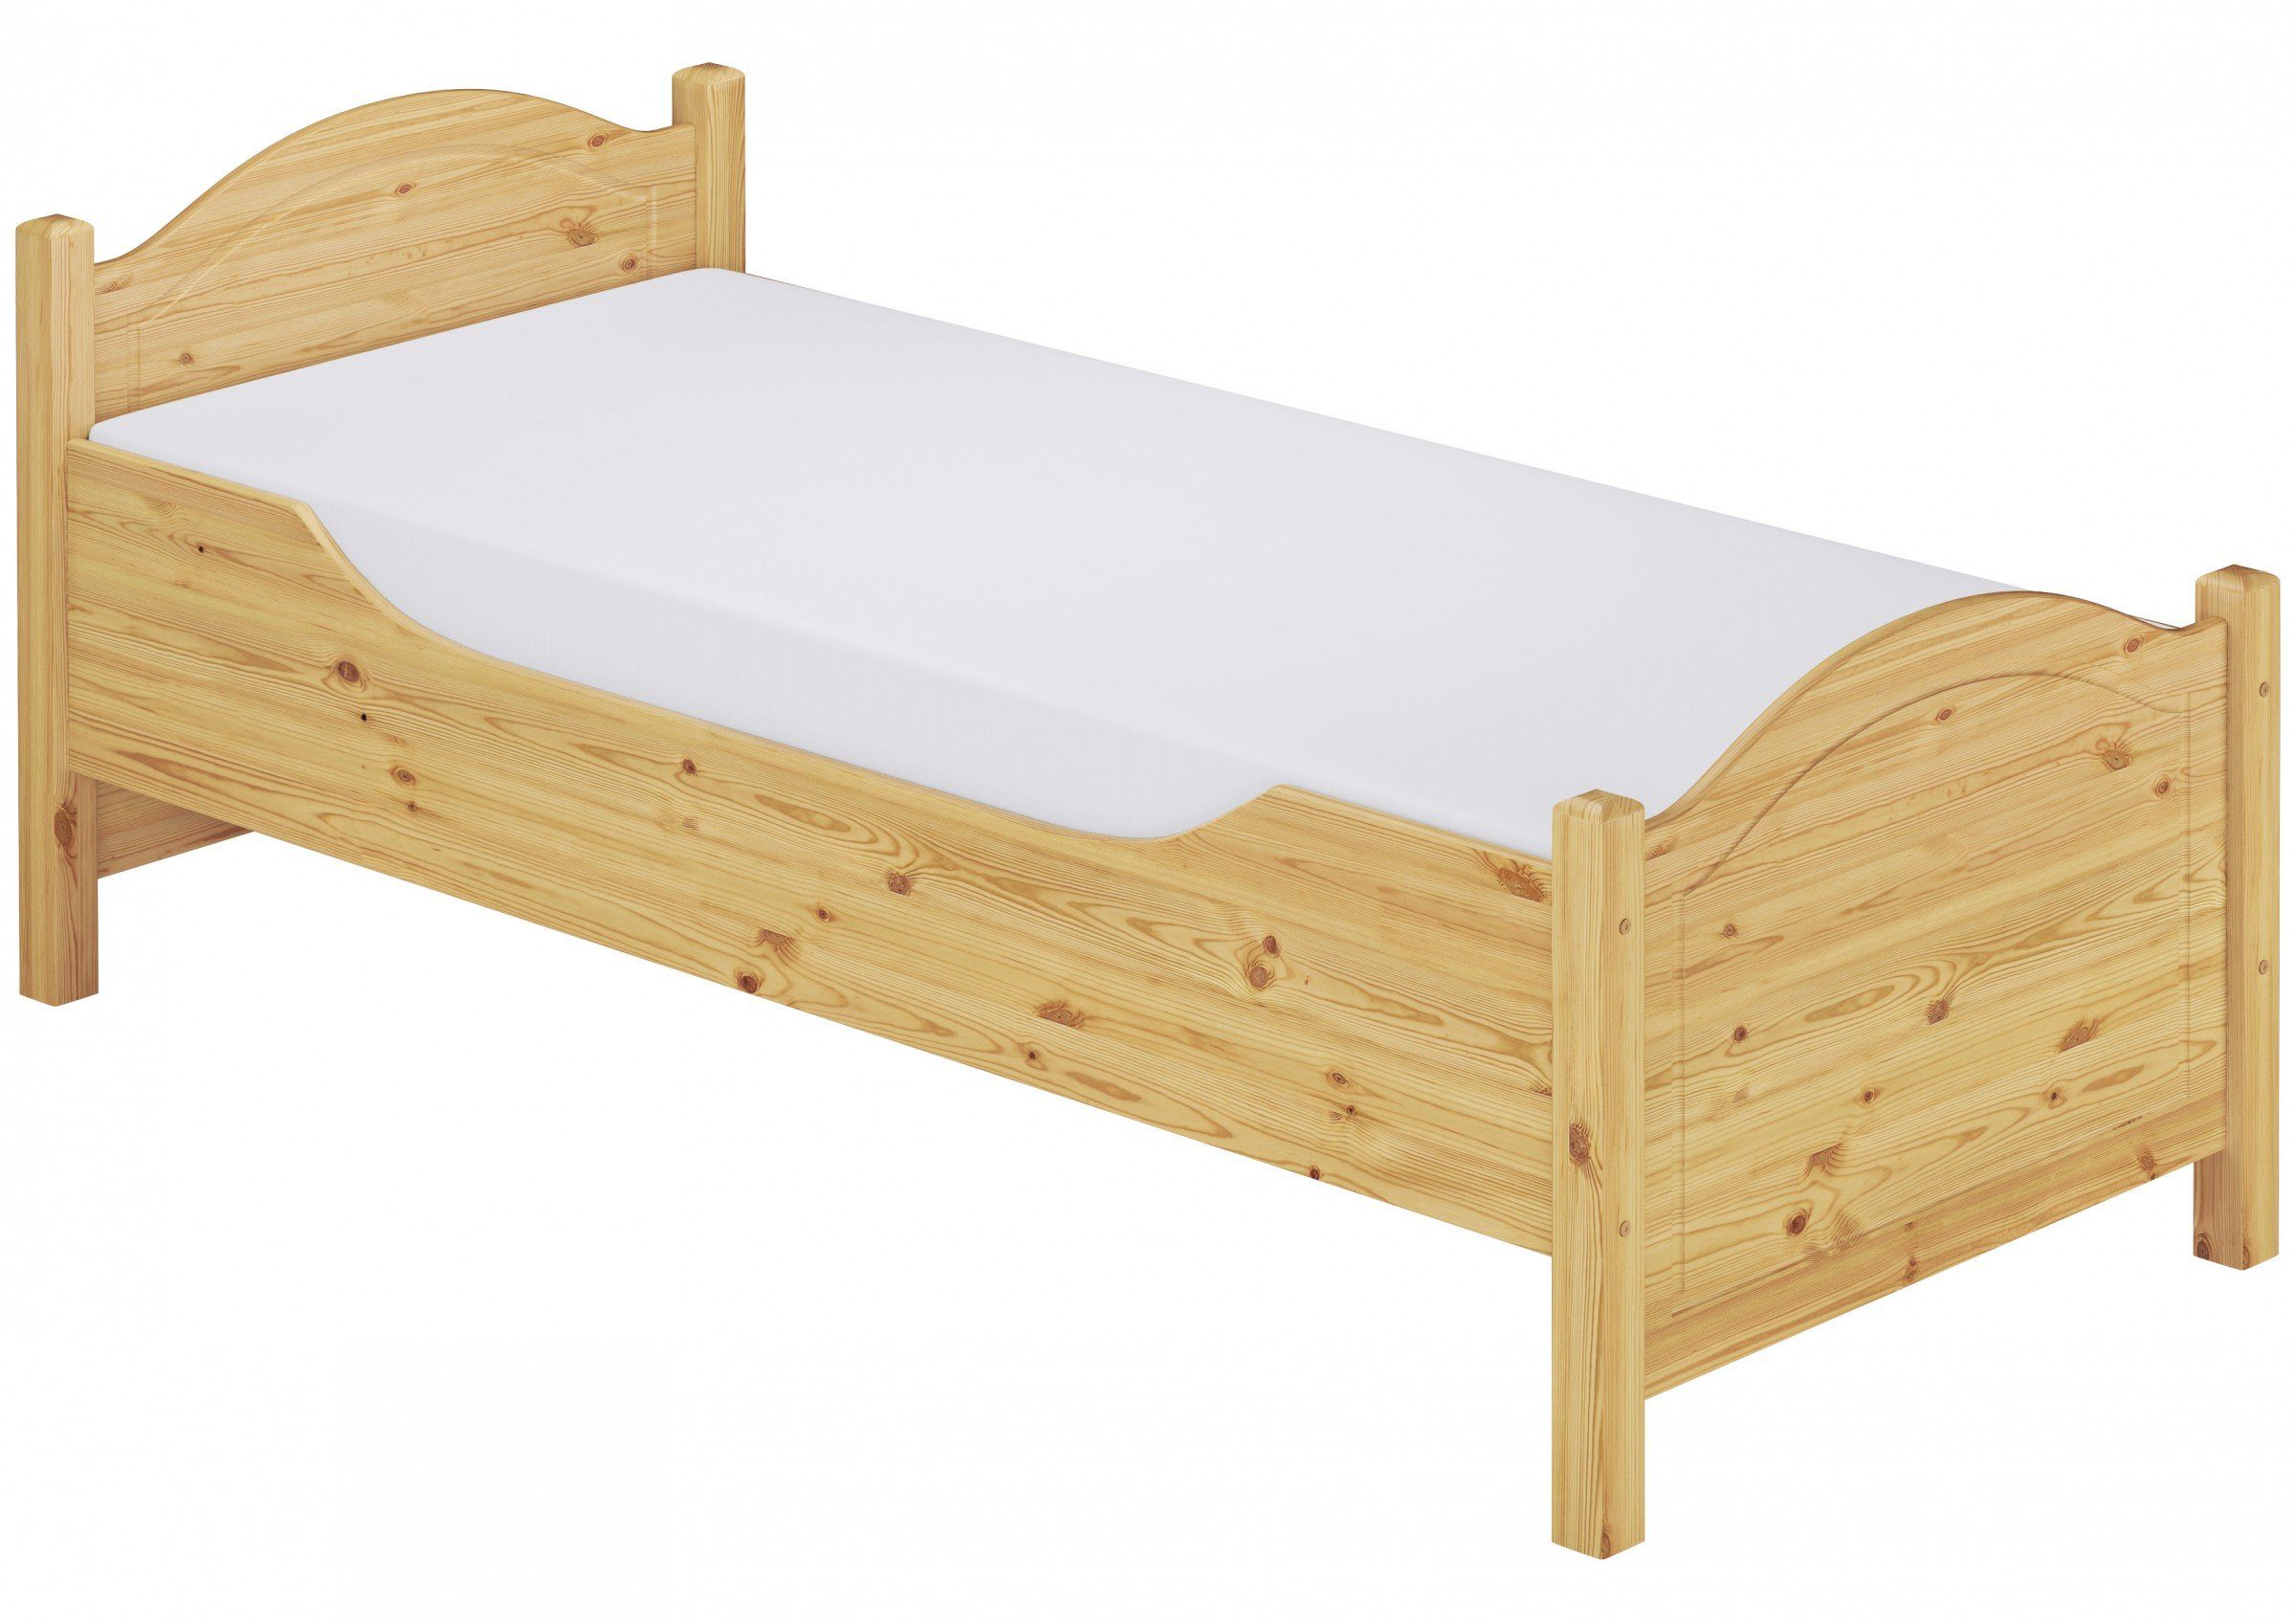 ERST-HOLZ Bett Seniorenbett mit Matratze und Federleisten 100x200 Kiefer, Kieferfarblos lackiert